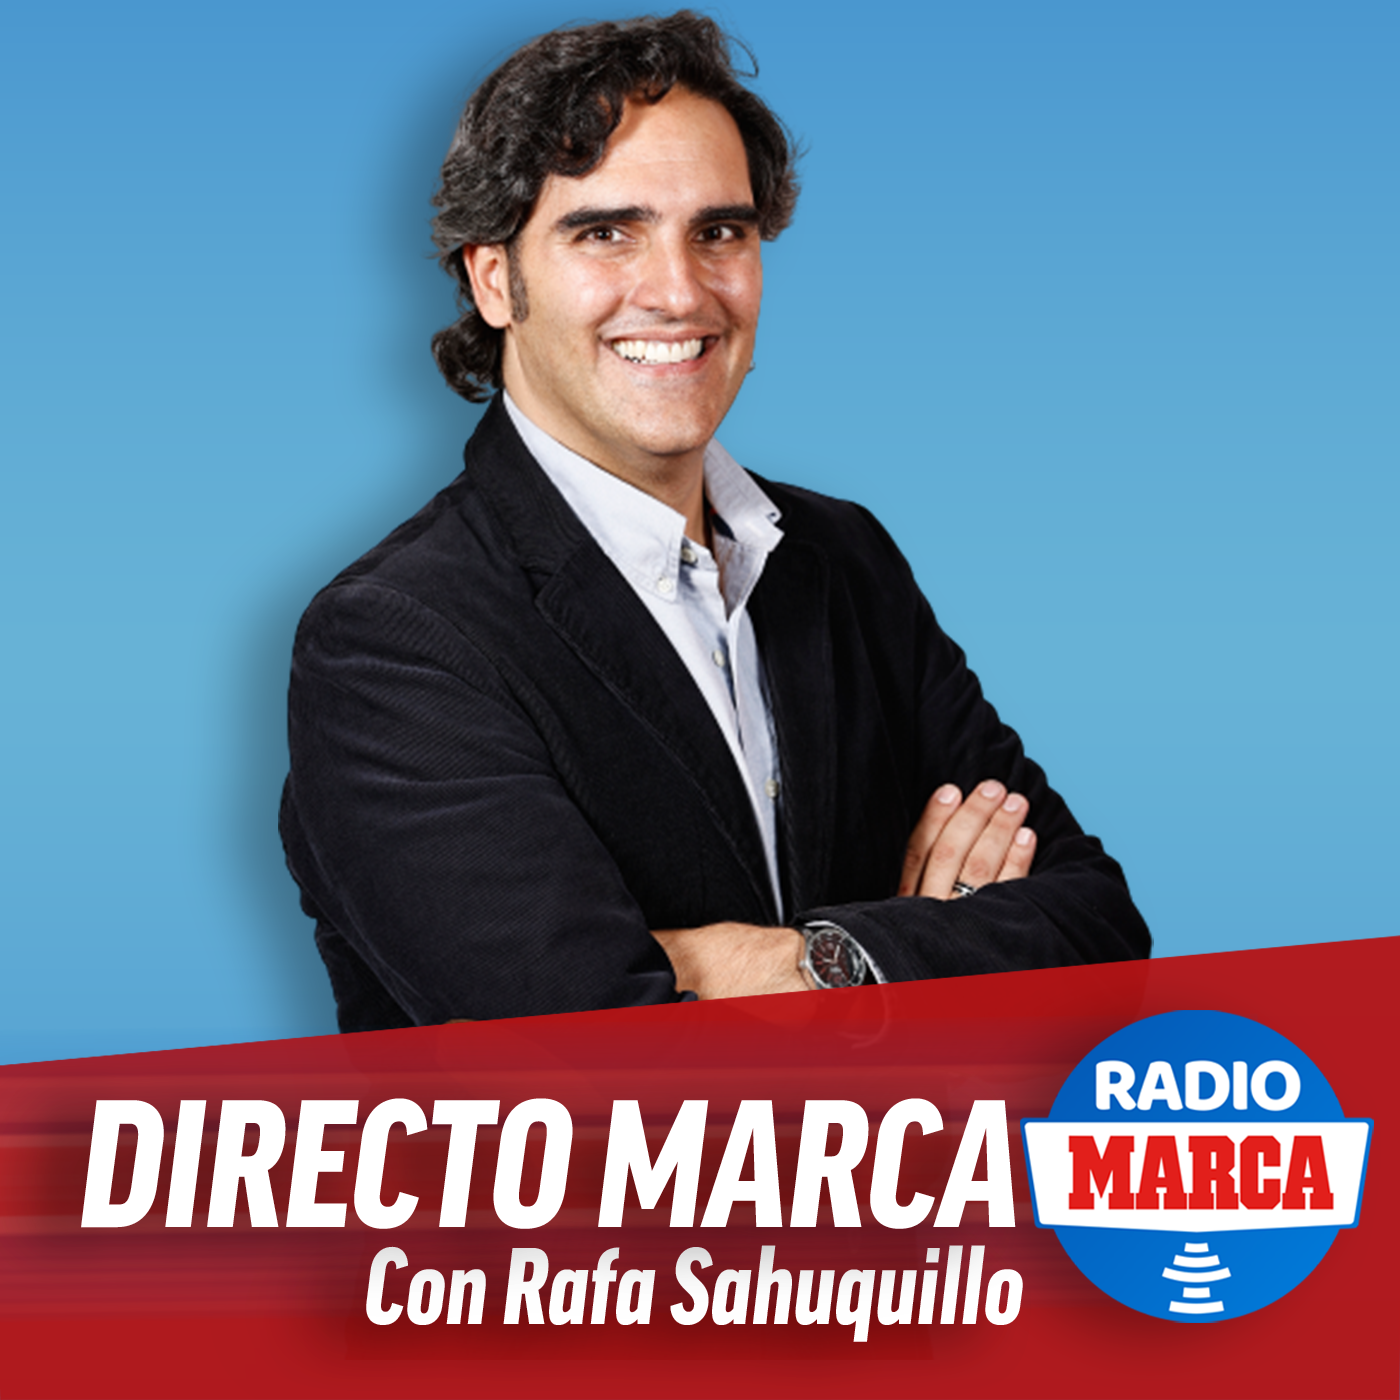 Directo MARCA con Rafa Sahuquillo  (29/3/2021) 1:00pm